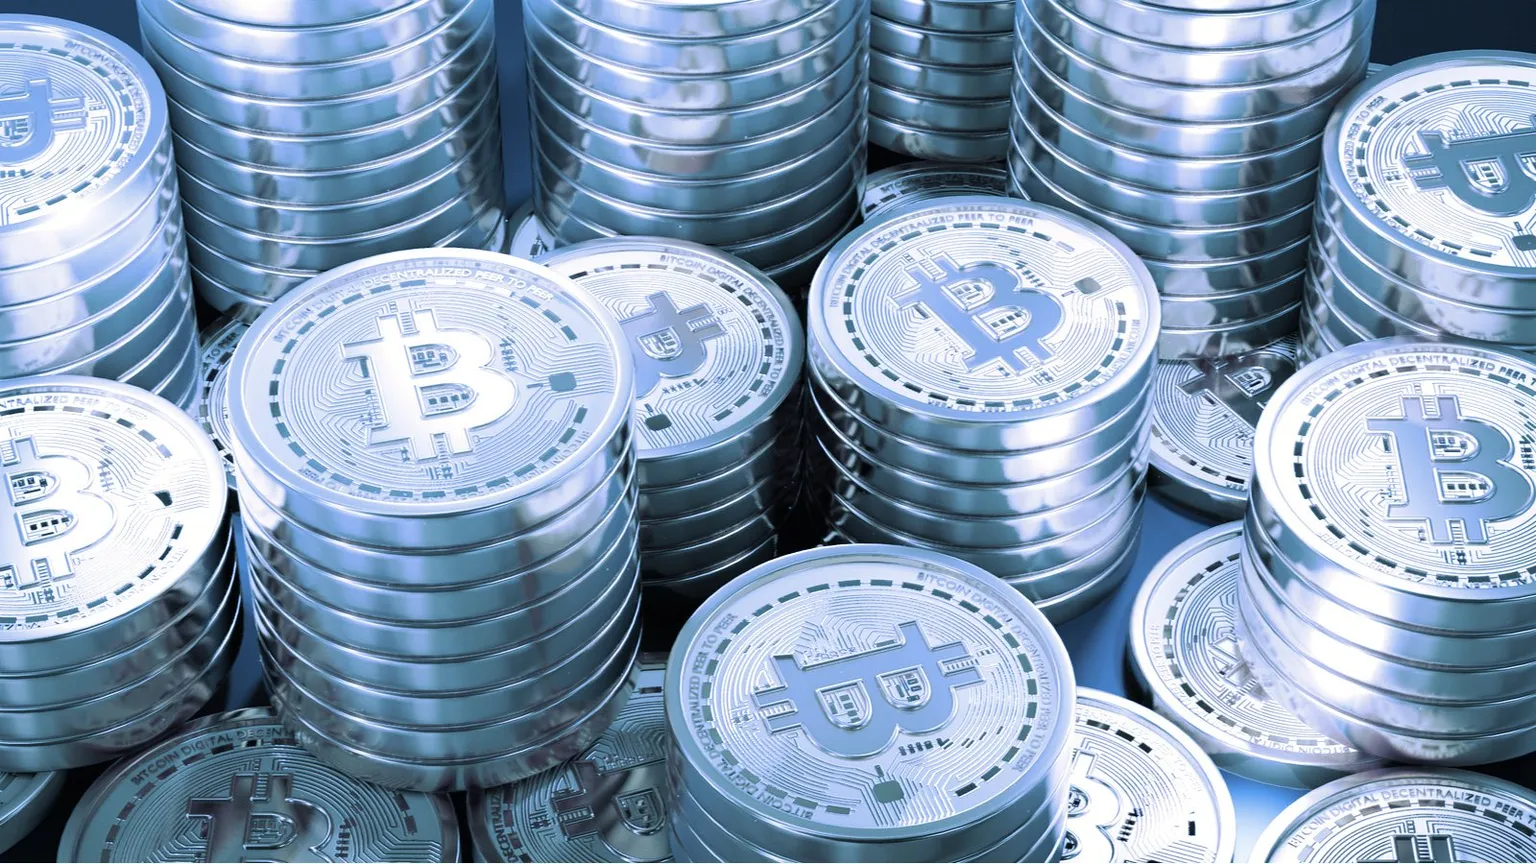 Los inversionistas institucionales están cada vez más interesados en comprar Bitcoin. Imagen: Shutterstock